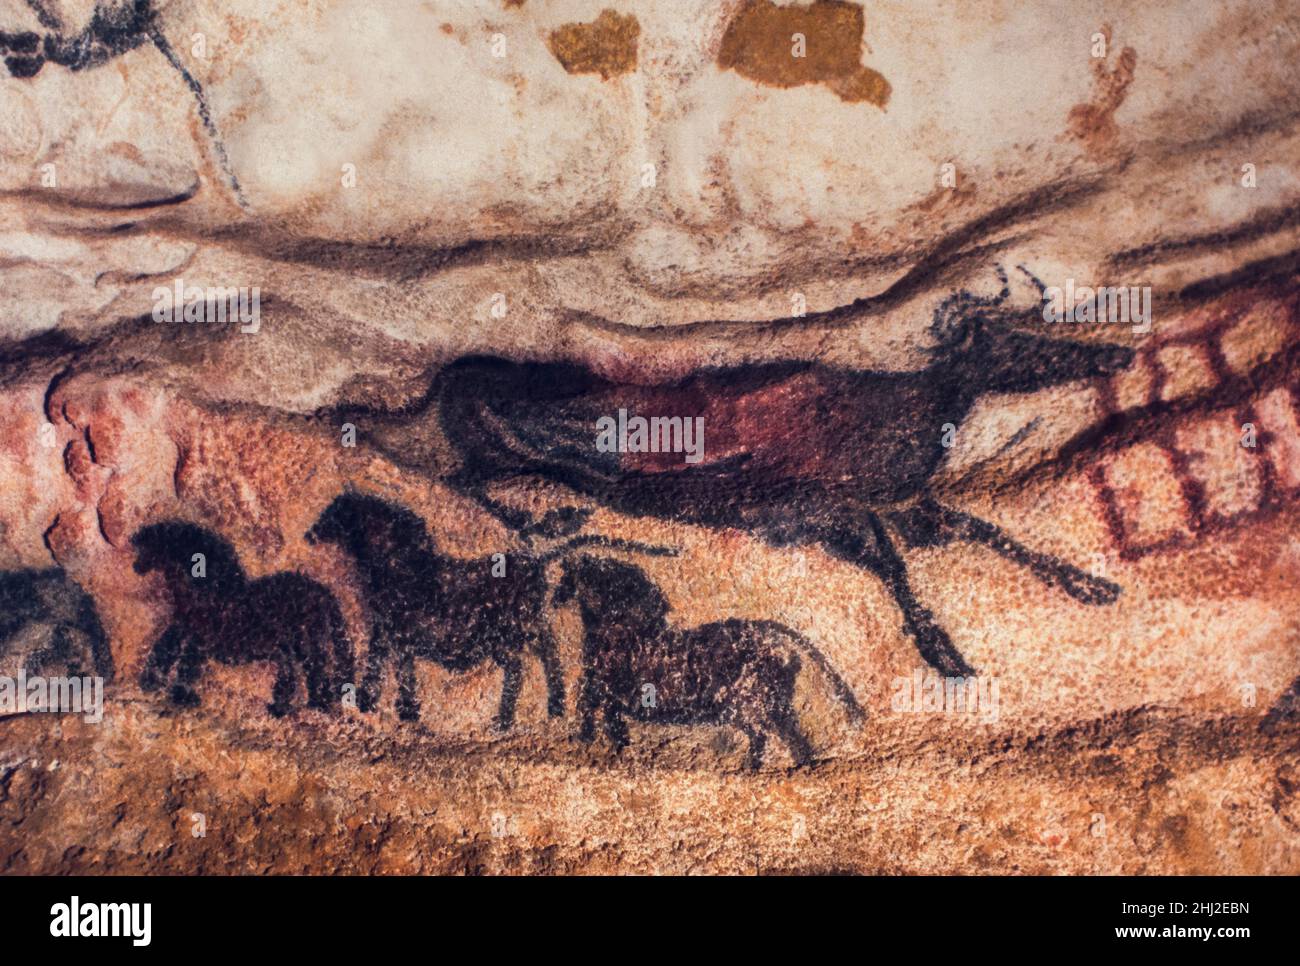 Peintures rupestres de l'âge de pierre d'auroch (aujourd'hui disparu taureau sauvage) et cheval dun, grottes de Lascaux, Périgord, Montignac, Dordogne,France Banque D'Images